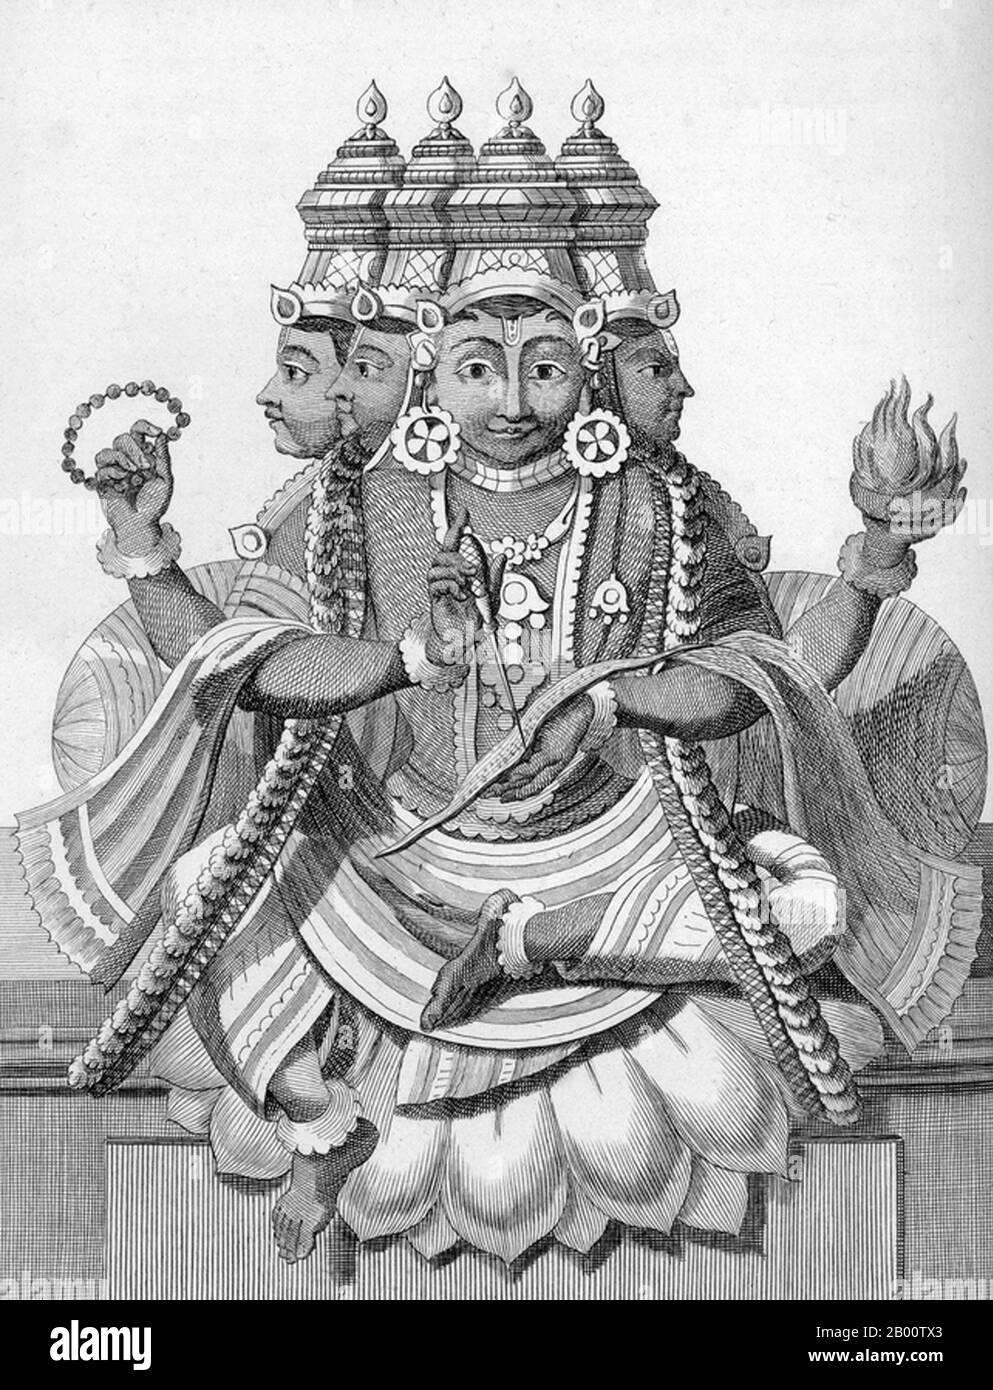 Inde: 'Trimurti - Brahma, Vishnu, et Siva'. Illustration de Pierre Sonnerat (1748-1814), 1782. Pierre Sonnerat (1748-1814) est un naturaliste et explorateur français qui a effectué plusieurs voyages en Asie du Sud-est entre 1769 et 1781. Il a publié ce compte-rendu en deux volumes de son voyage de 1774-81 en 1782. Le volume 1 traite exclusivement de l'Inde, dont la culture Sonnerat admirait beaucoup, et est particulièrement remarquable pour sa discussion élargie de la religion en Inde, l'hindouisme en particulier. Le livre est illustré avec des gravures basées sur les dessins de Sonnerat. Banque D'Images